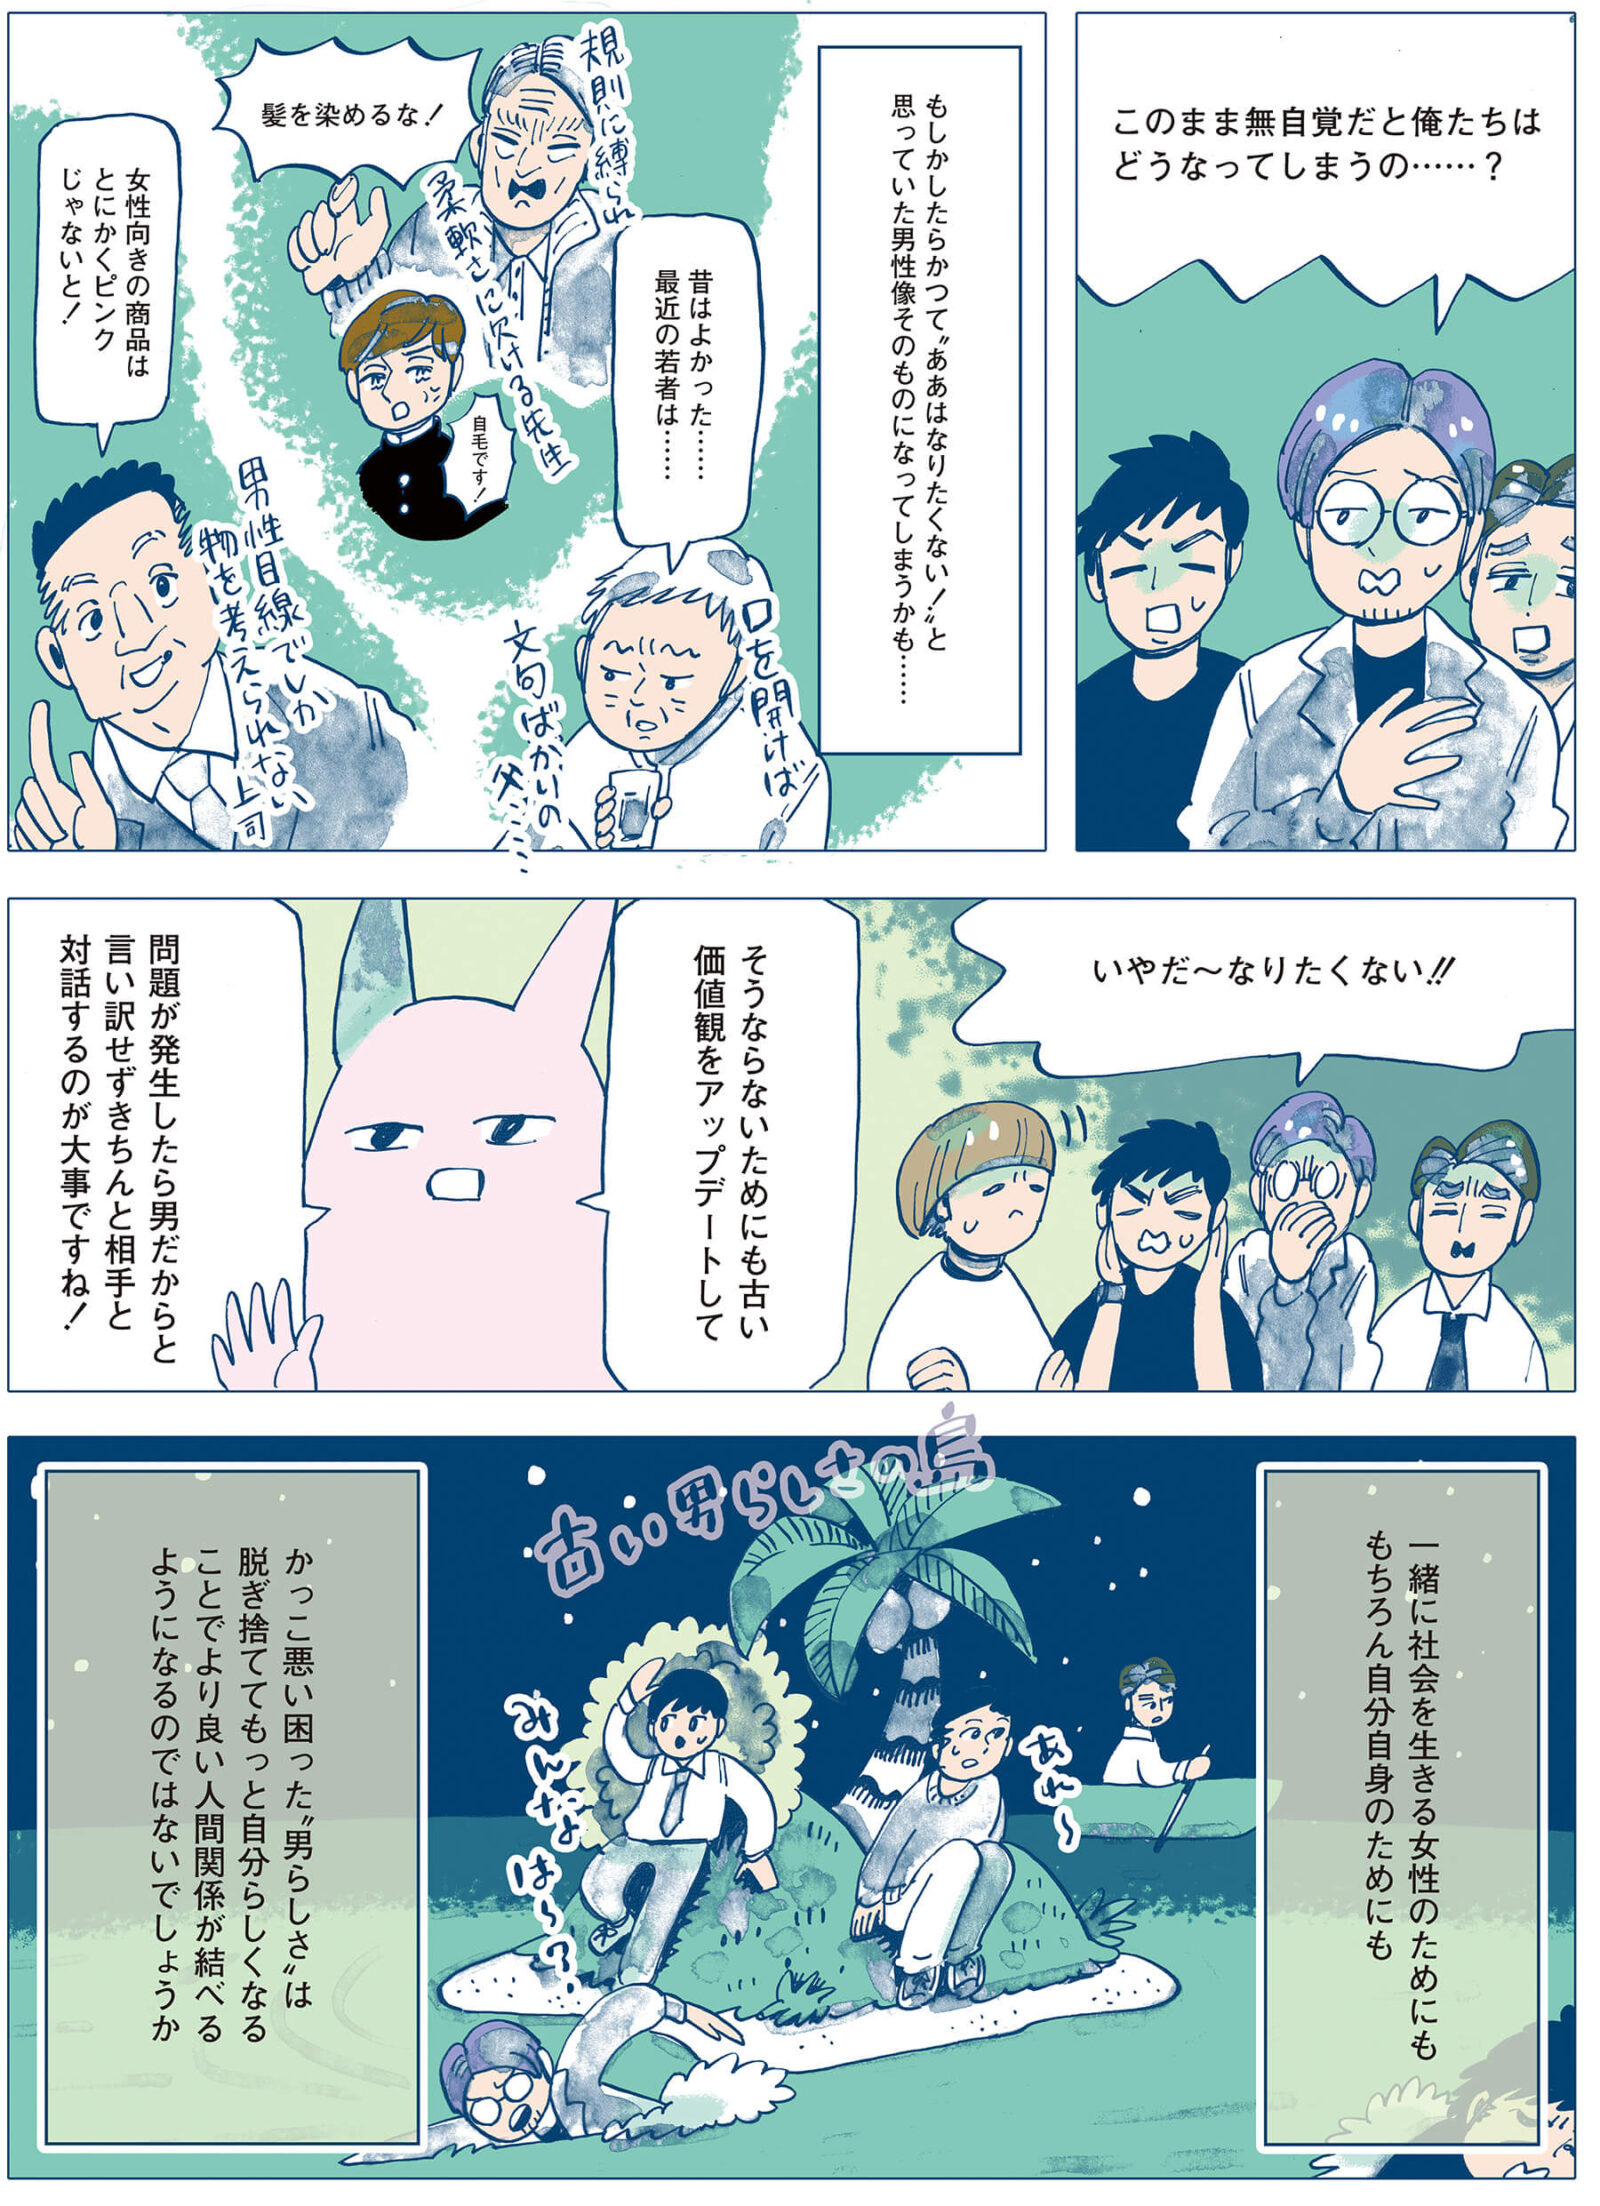 漫画家 谷口菜津子 「さよなら男らしさ」ストーリー4